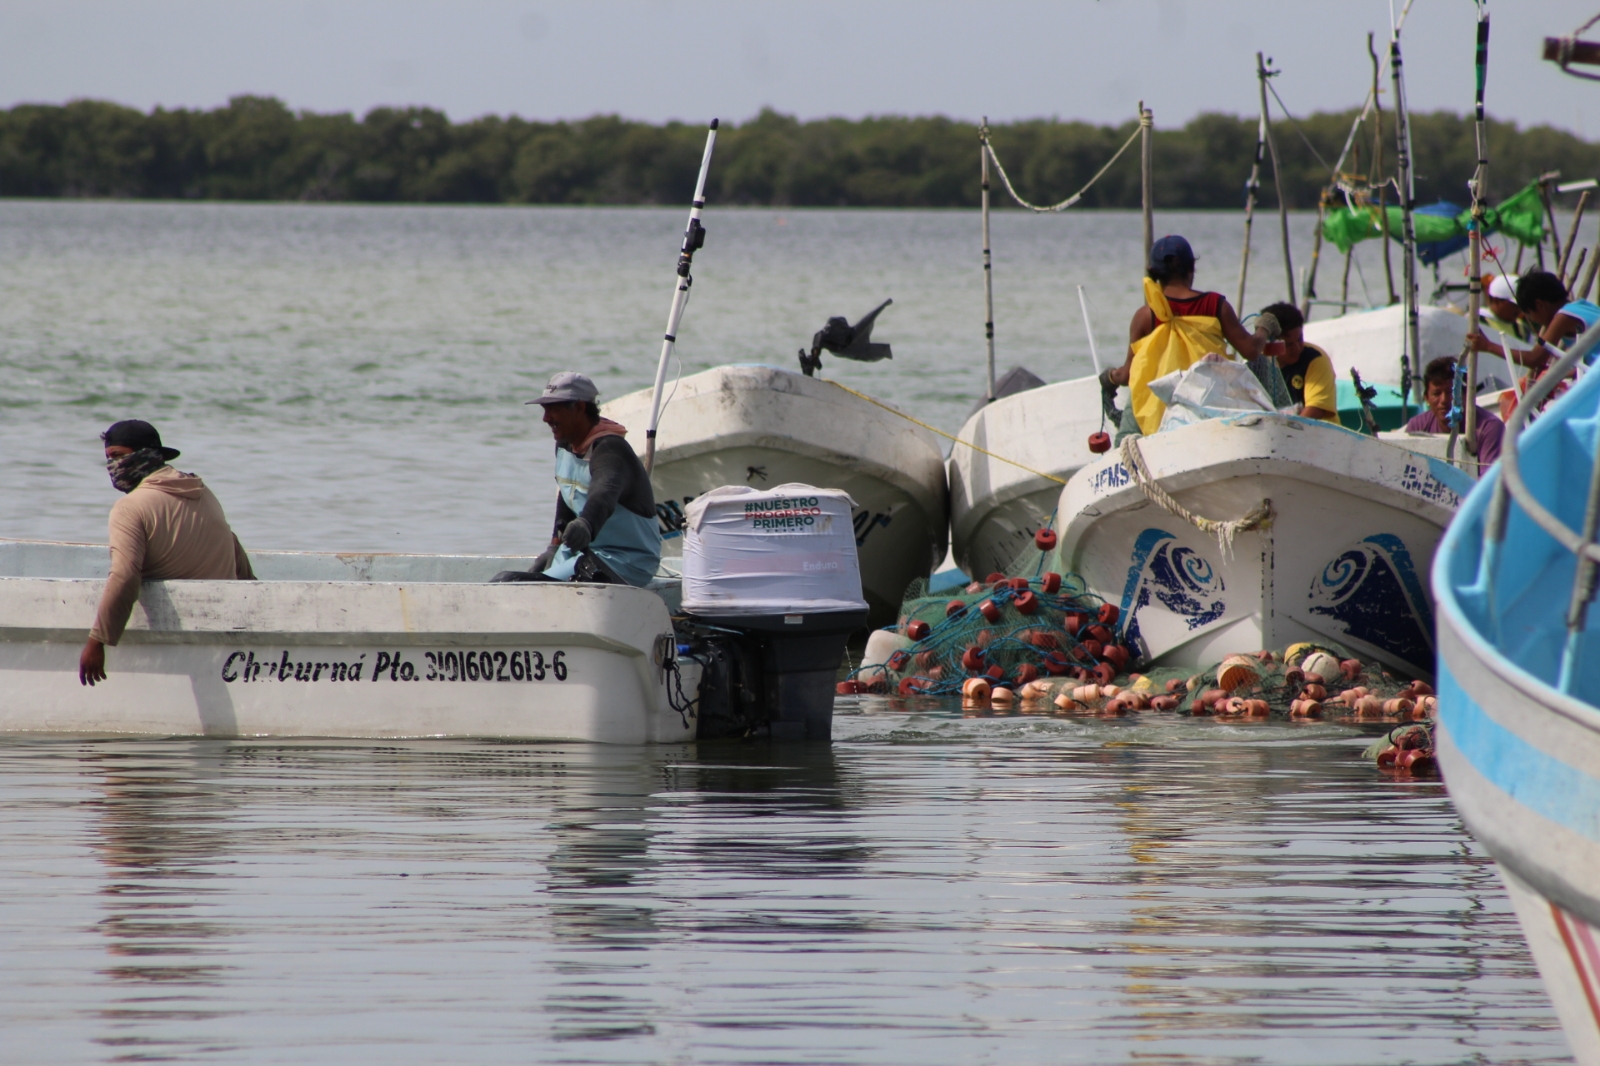 Los lugareños comentaron los riesgos de la actividad pesquera